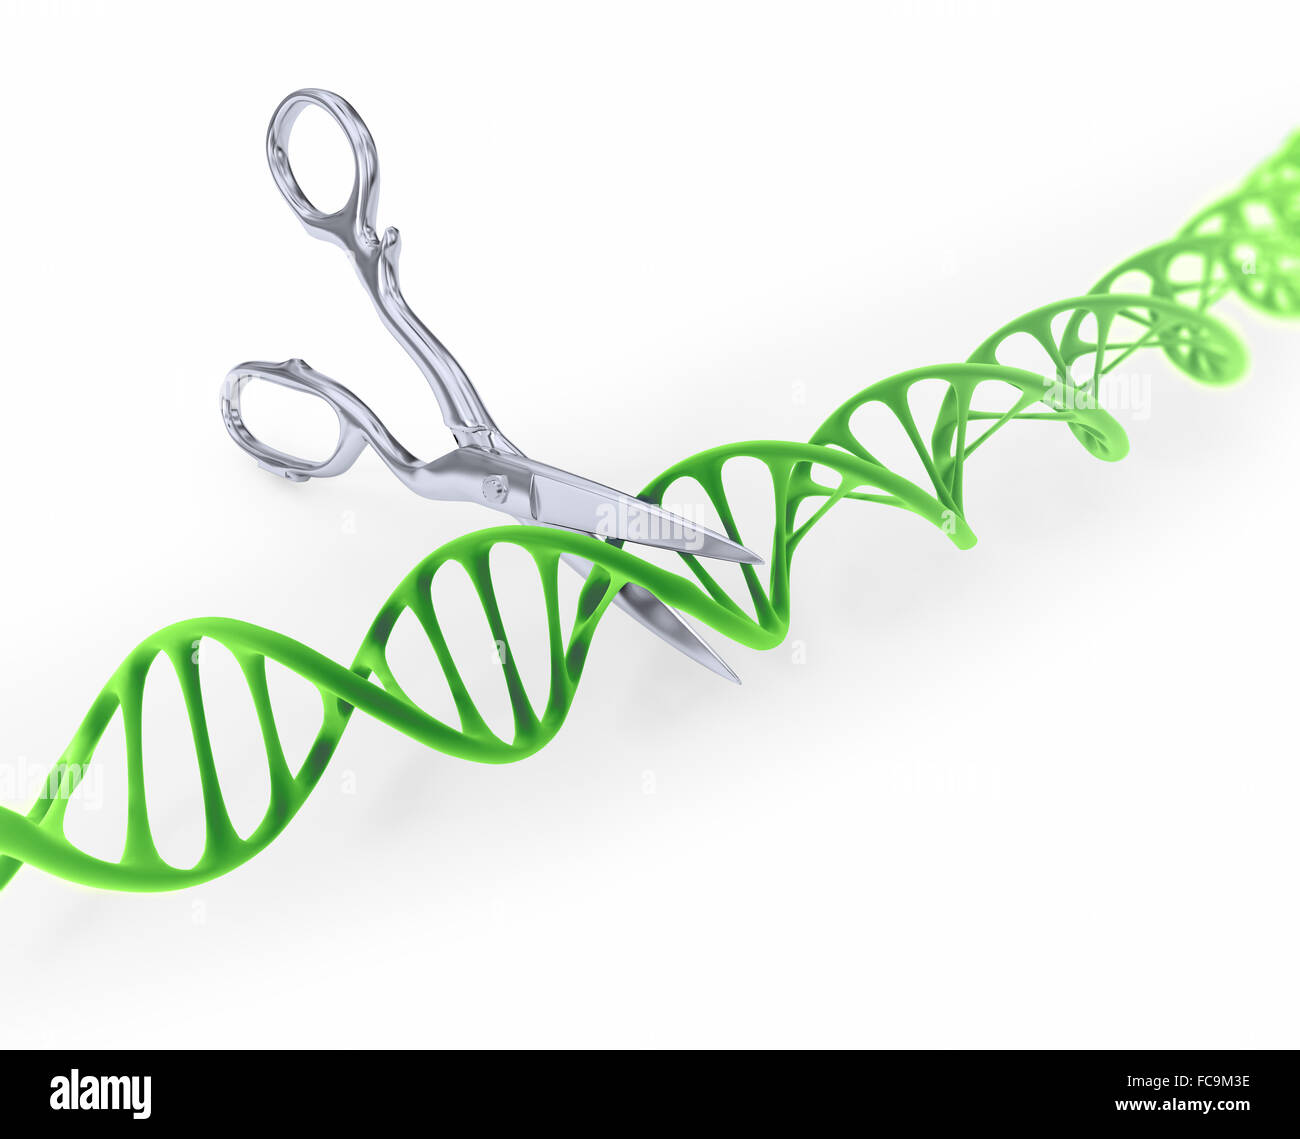 DNA-Strang schneiden mit der Schere - gen konzeptionelle Darstellung bearbeiten Stockfoto